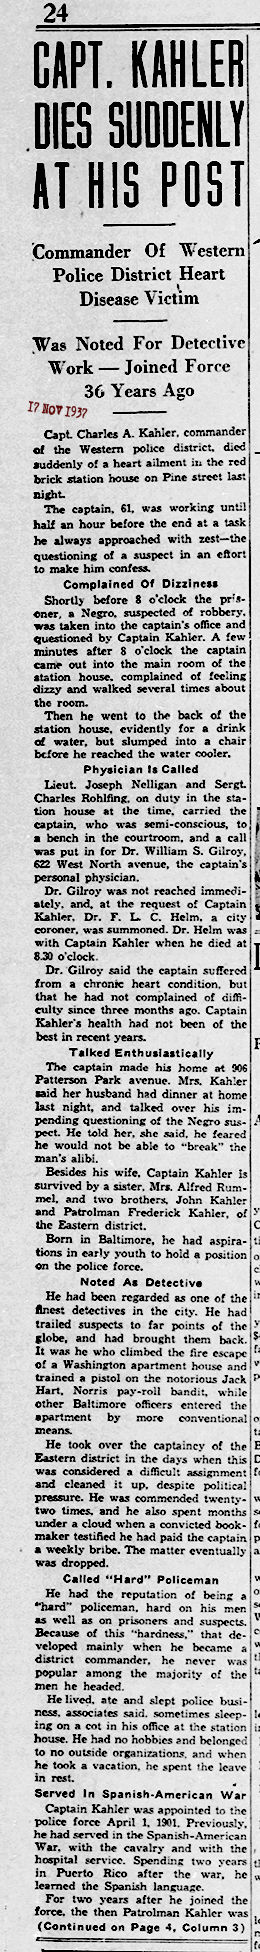 The Baltimore Sun Wed Nov 17 1937 72